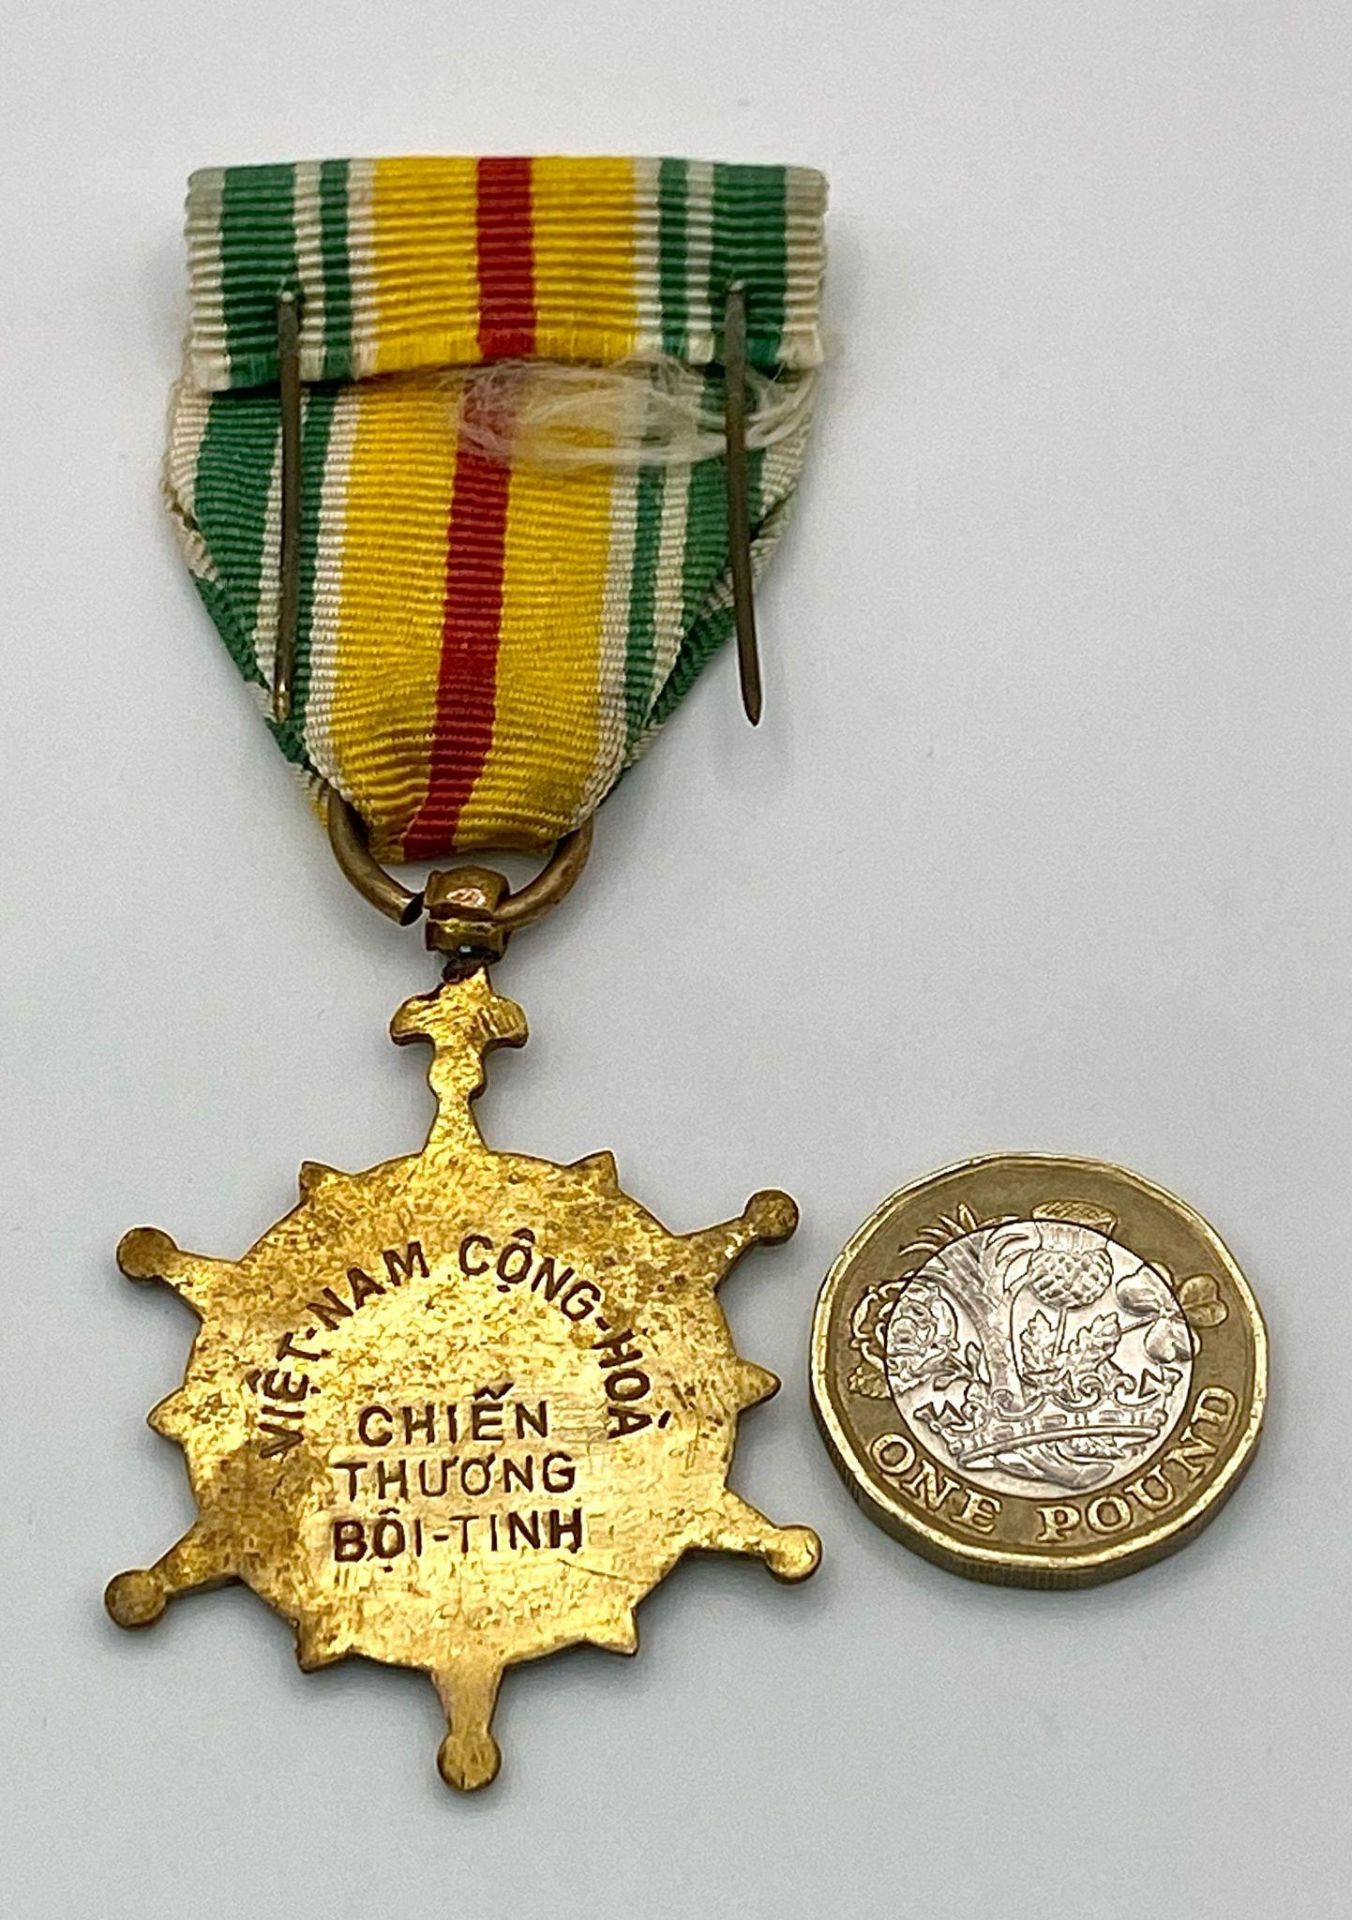 Vietnam War Era ARVN Battle Wound (Saigon Hero) Medal - Image 5 of 6